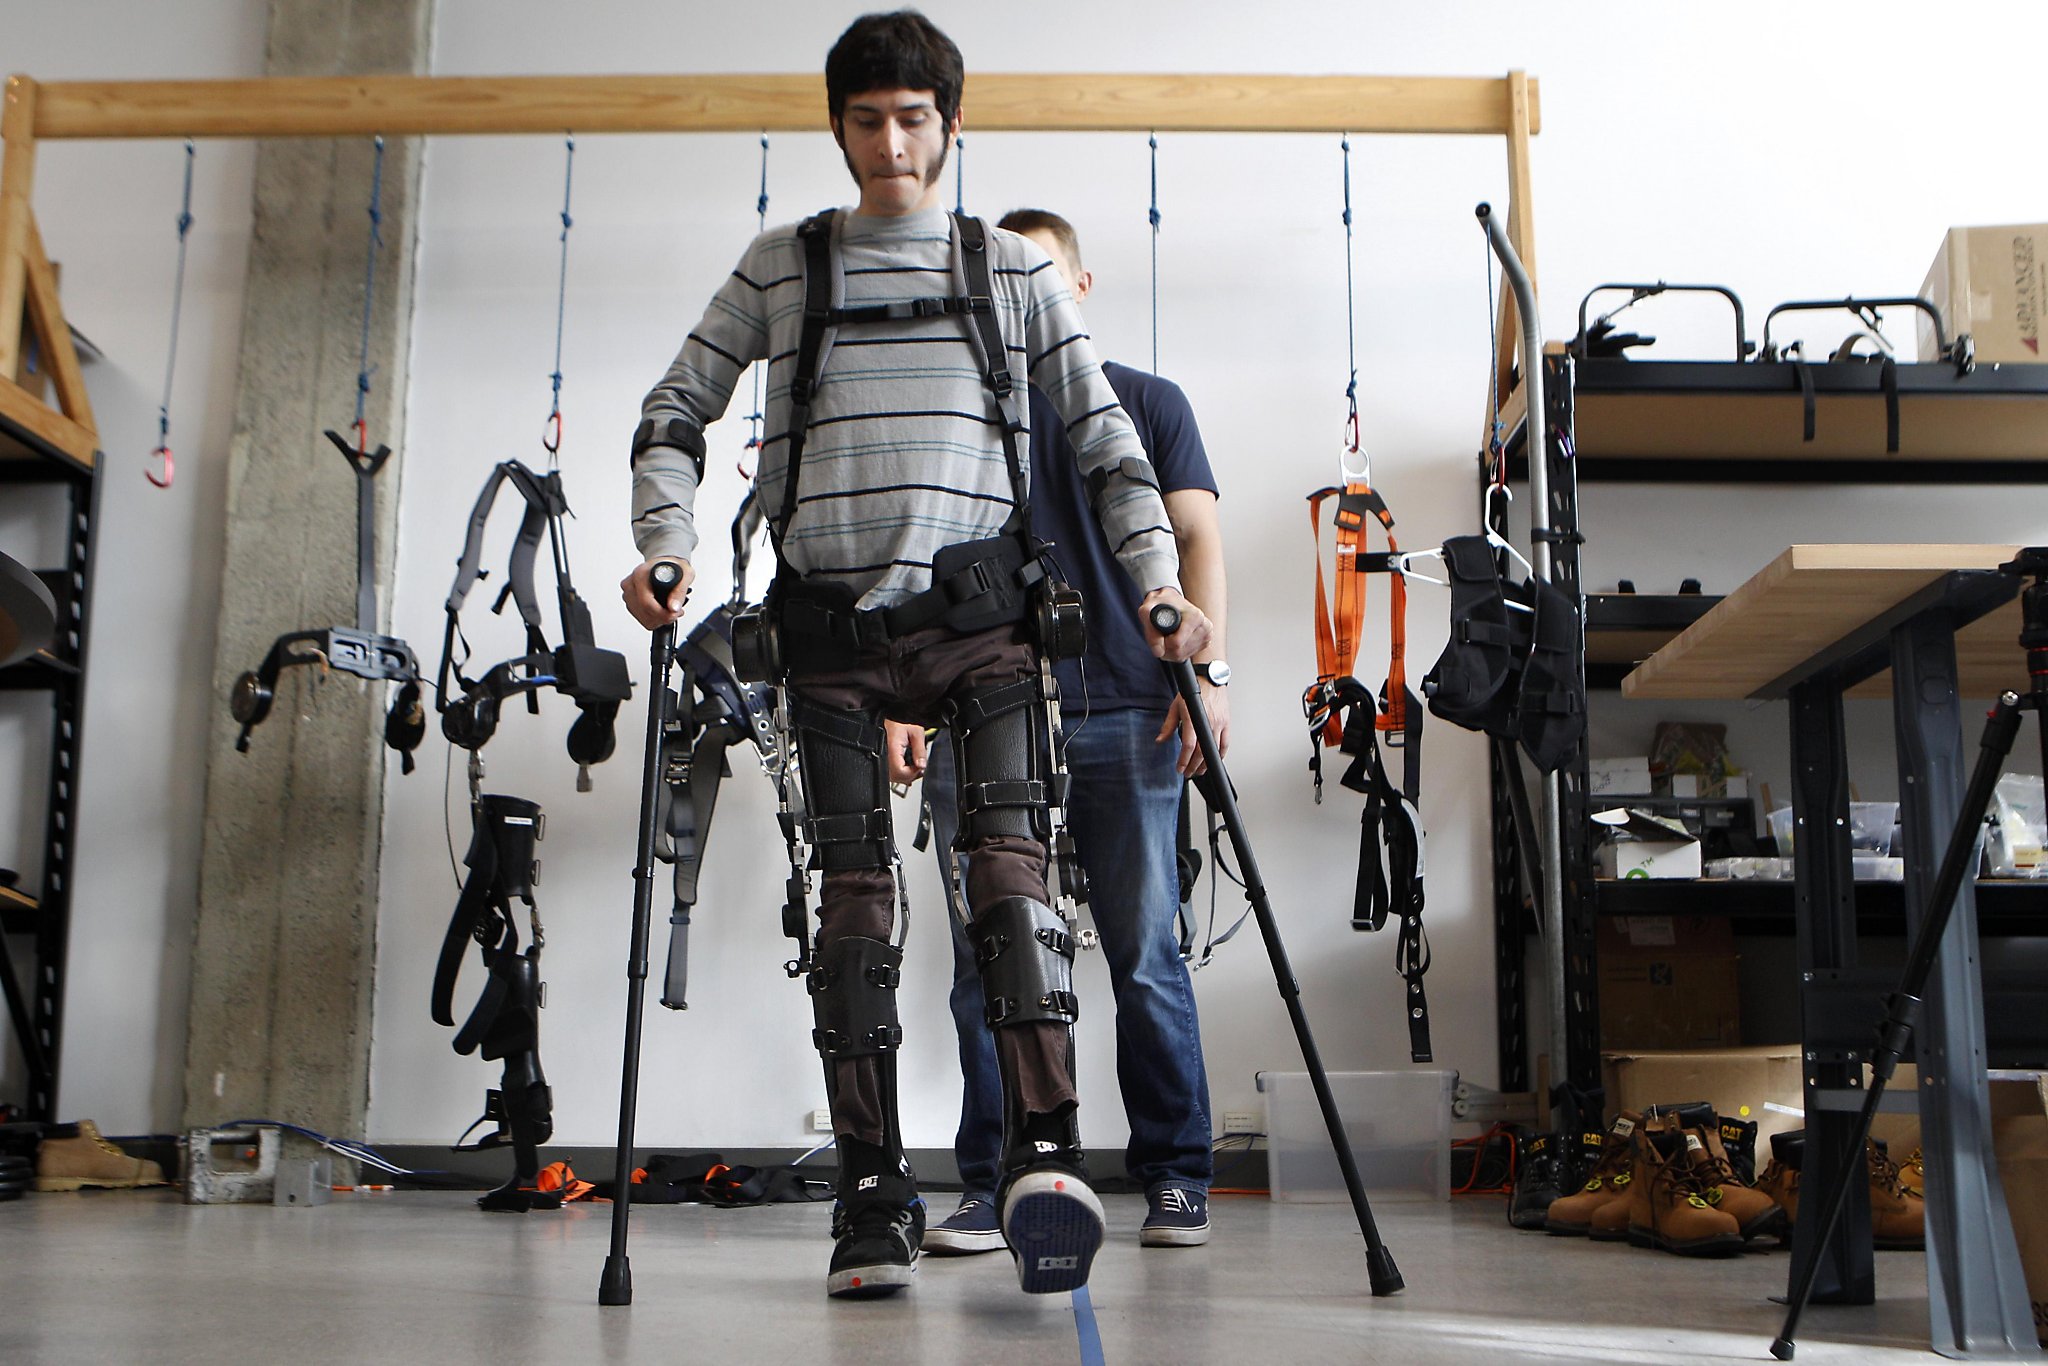 SuitX’s robot suit lets paralyzed people walk again - SFChronicle.com